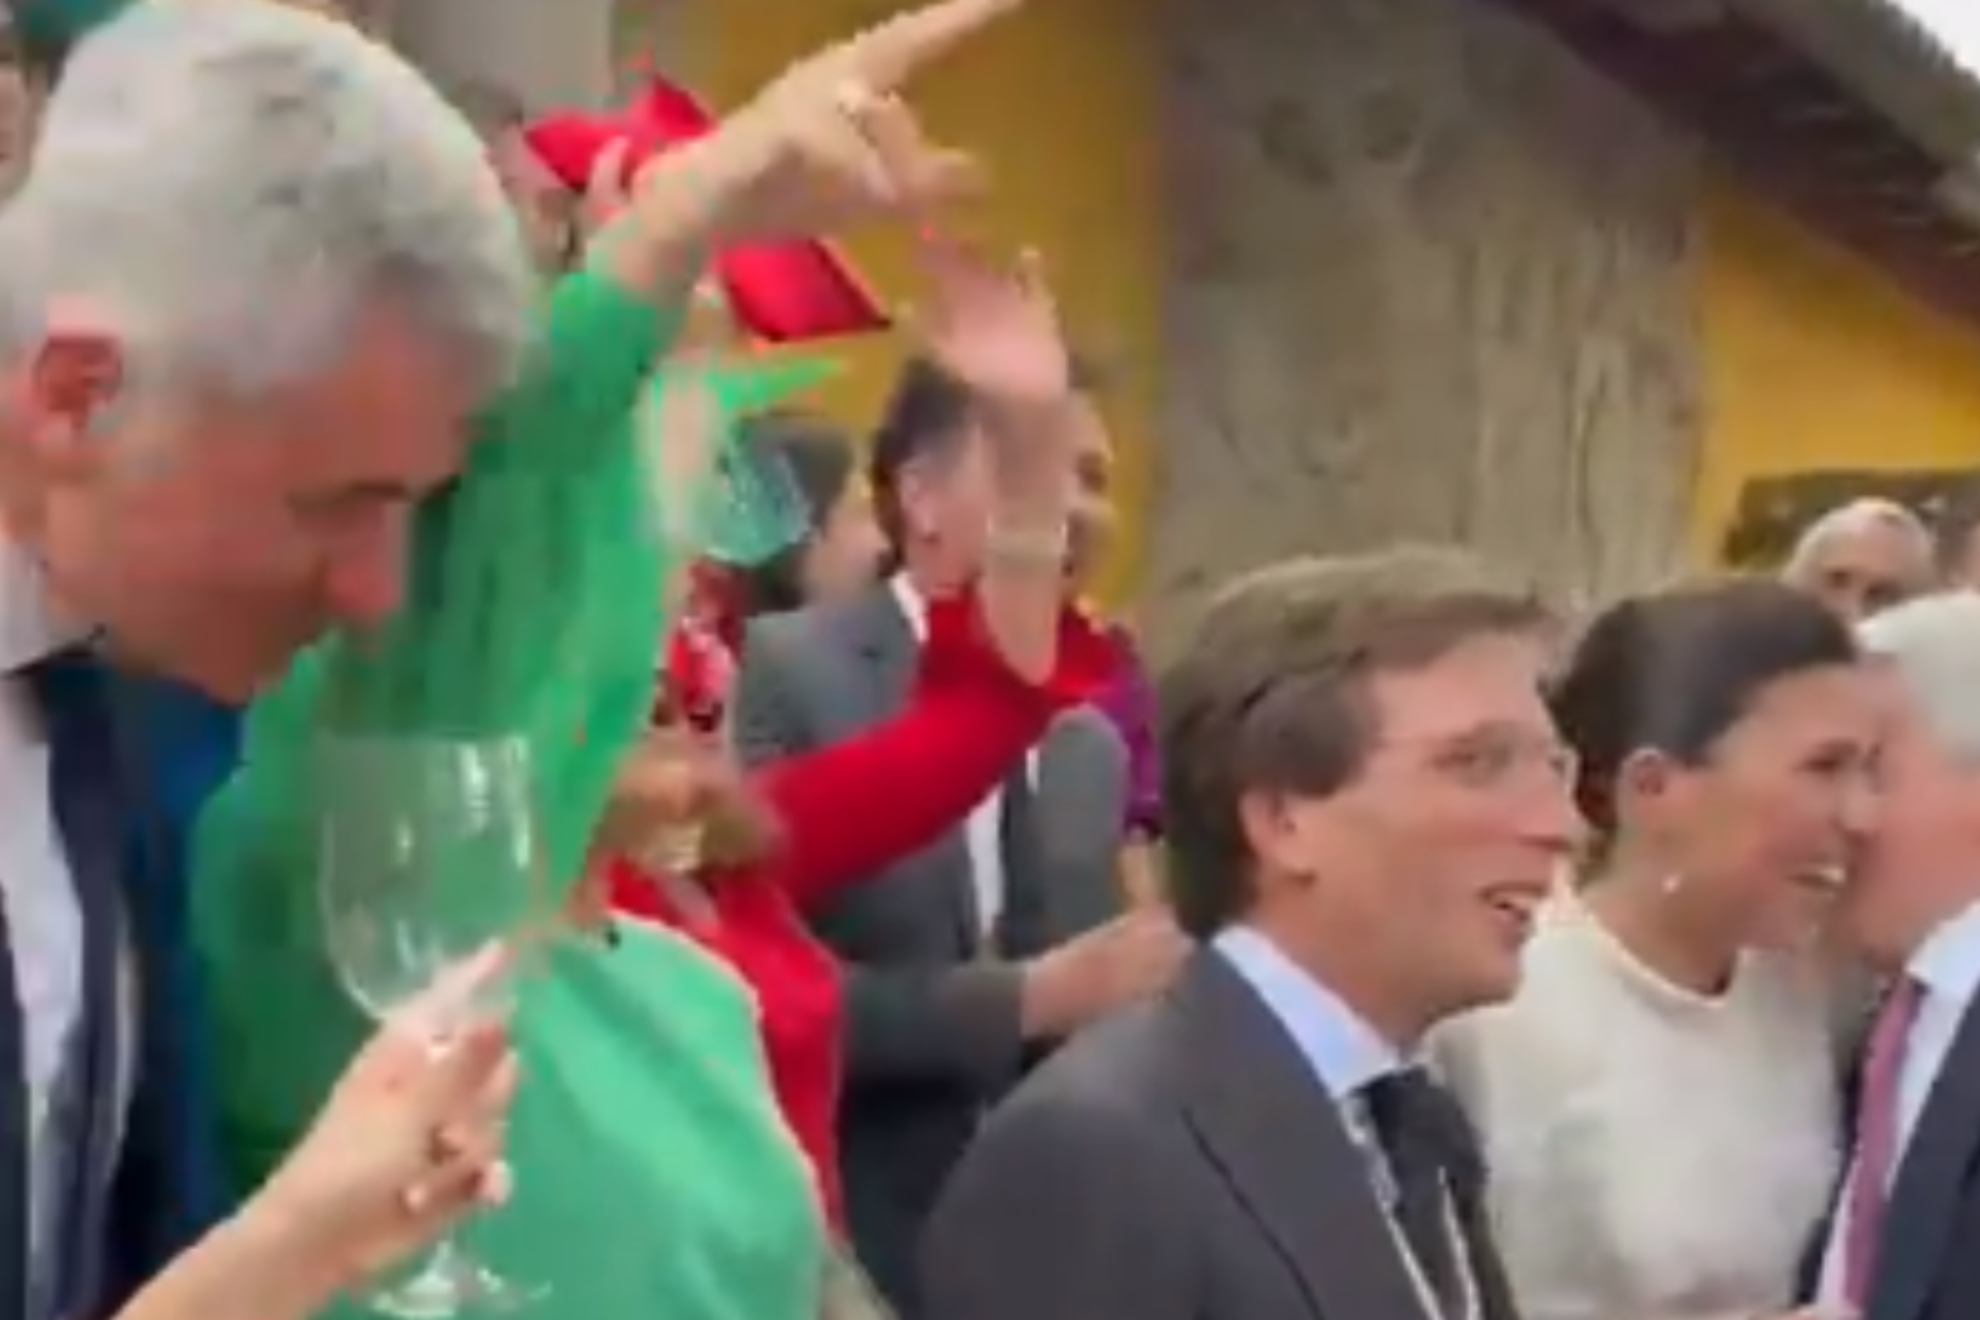 La boda de Almeida y el momentazo cantando el himno del Atltico con Simeone, Cerezo y Gil Marn: Atleti...